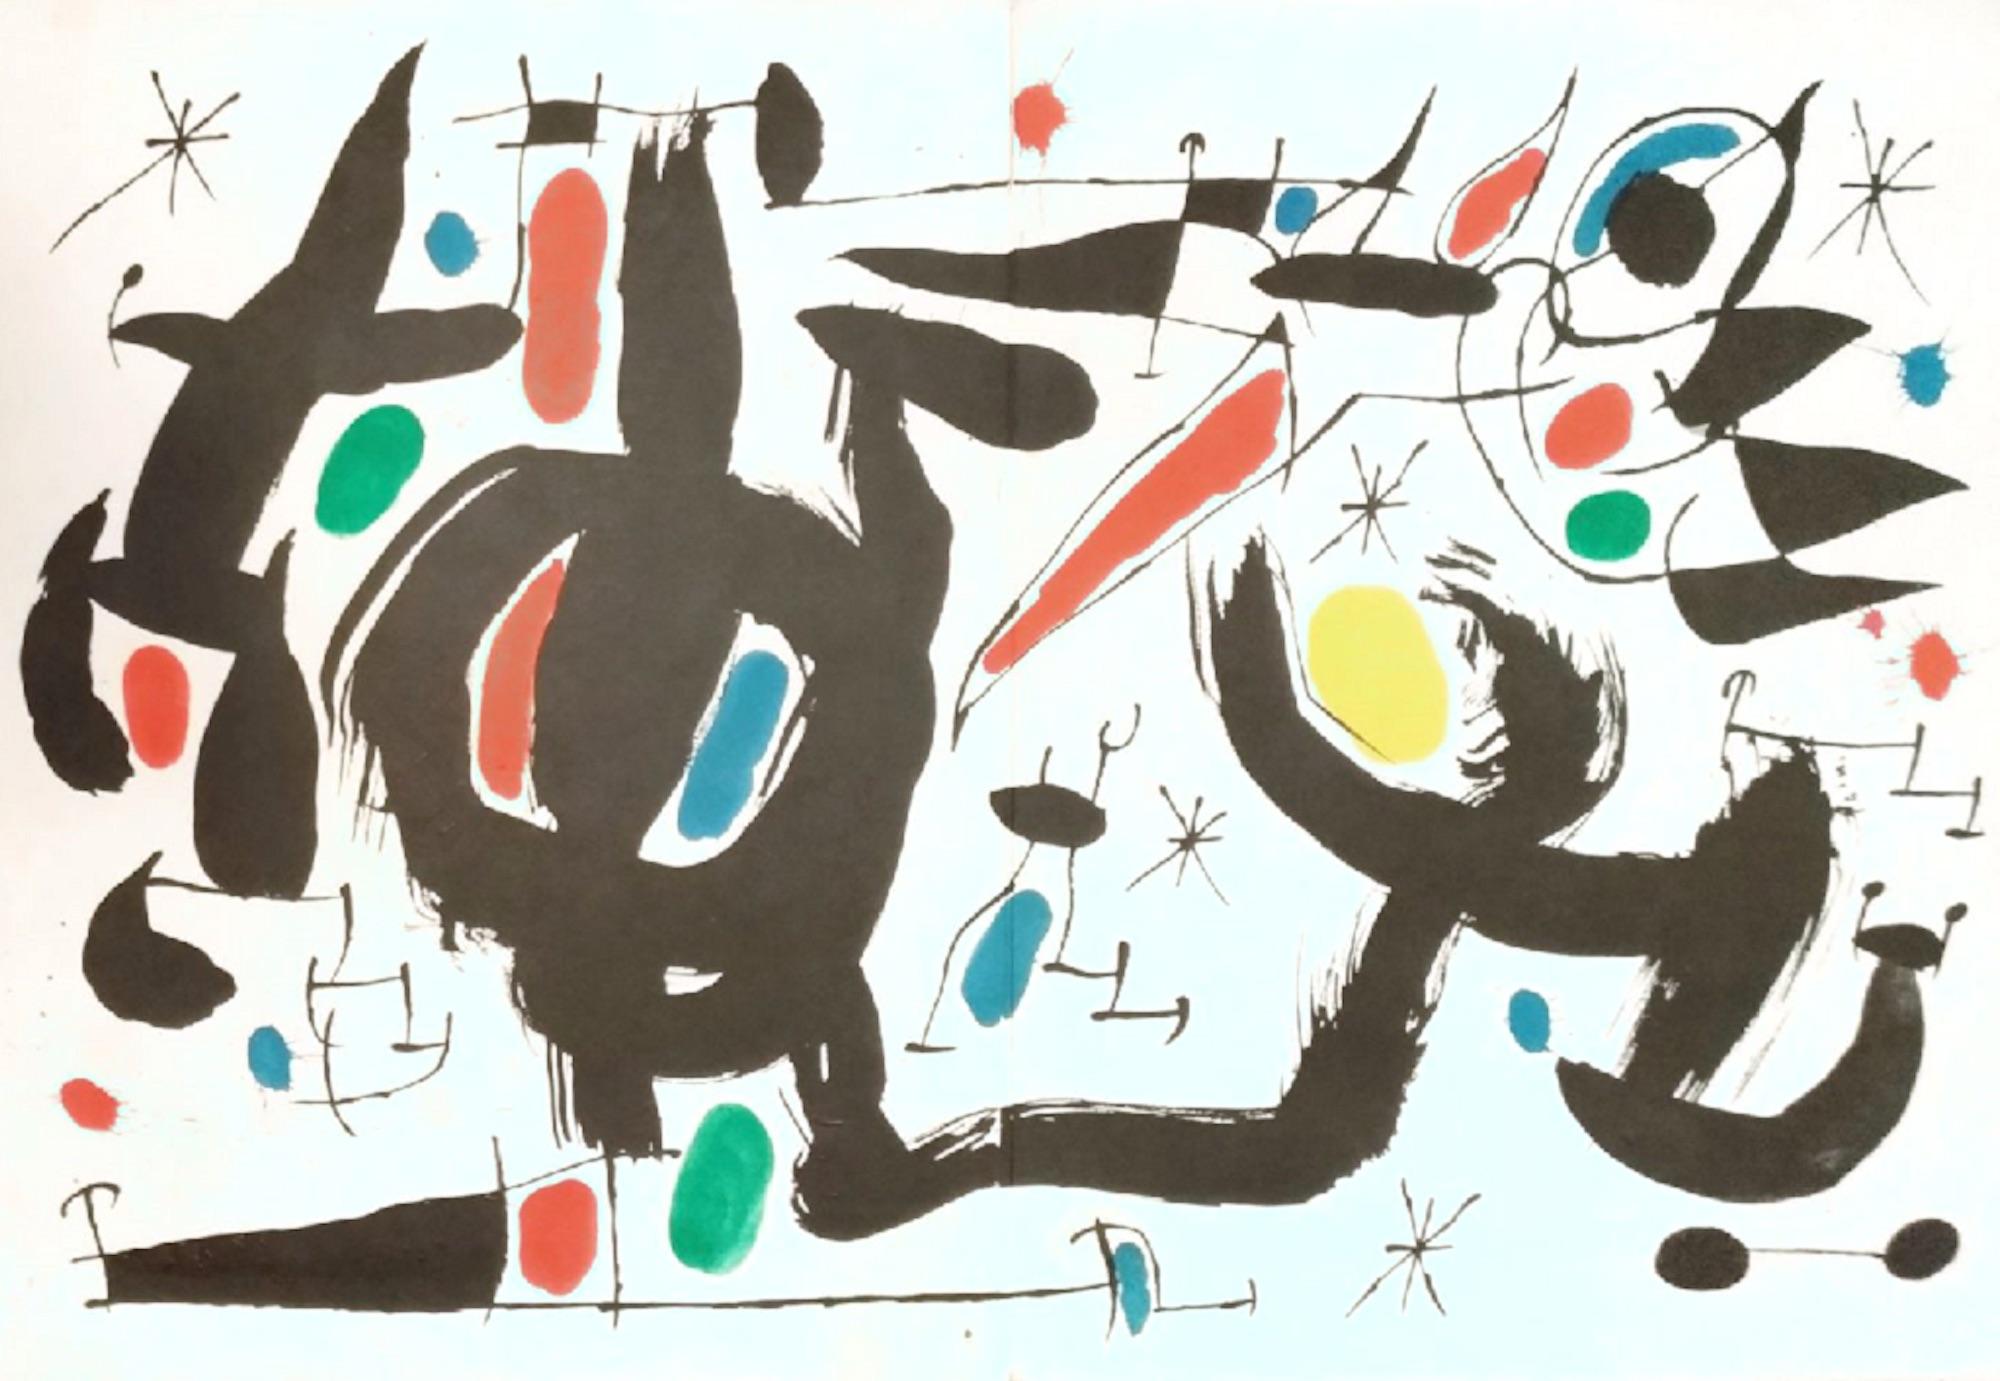 Joan Miró Abstract Print - Les Essències de la Terra - Lithograph by Joan Mirò - 1968